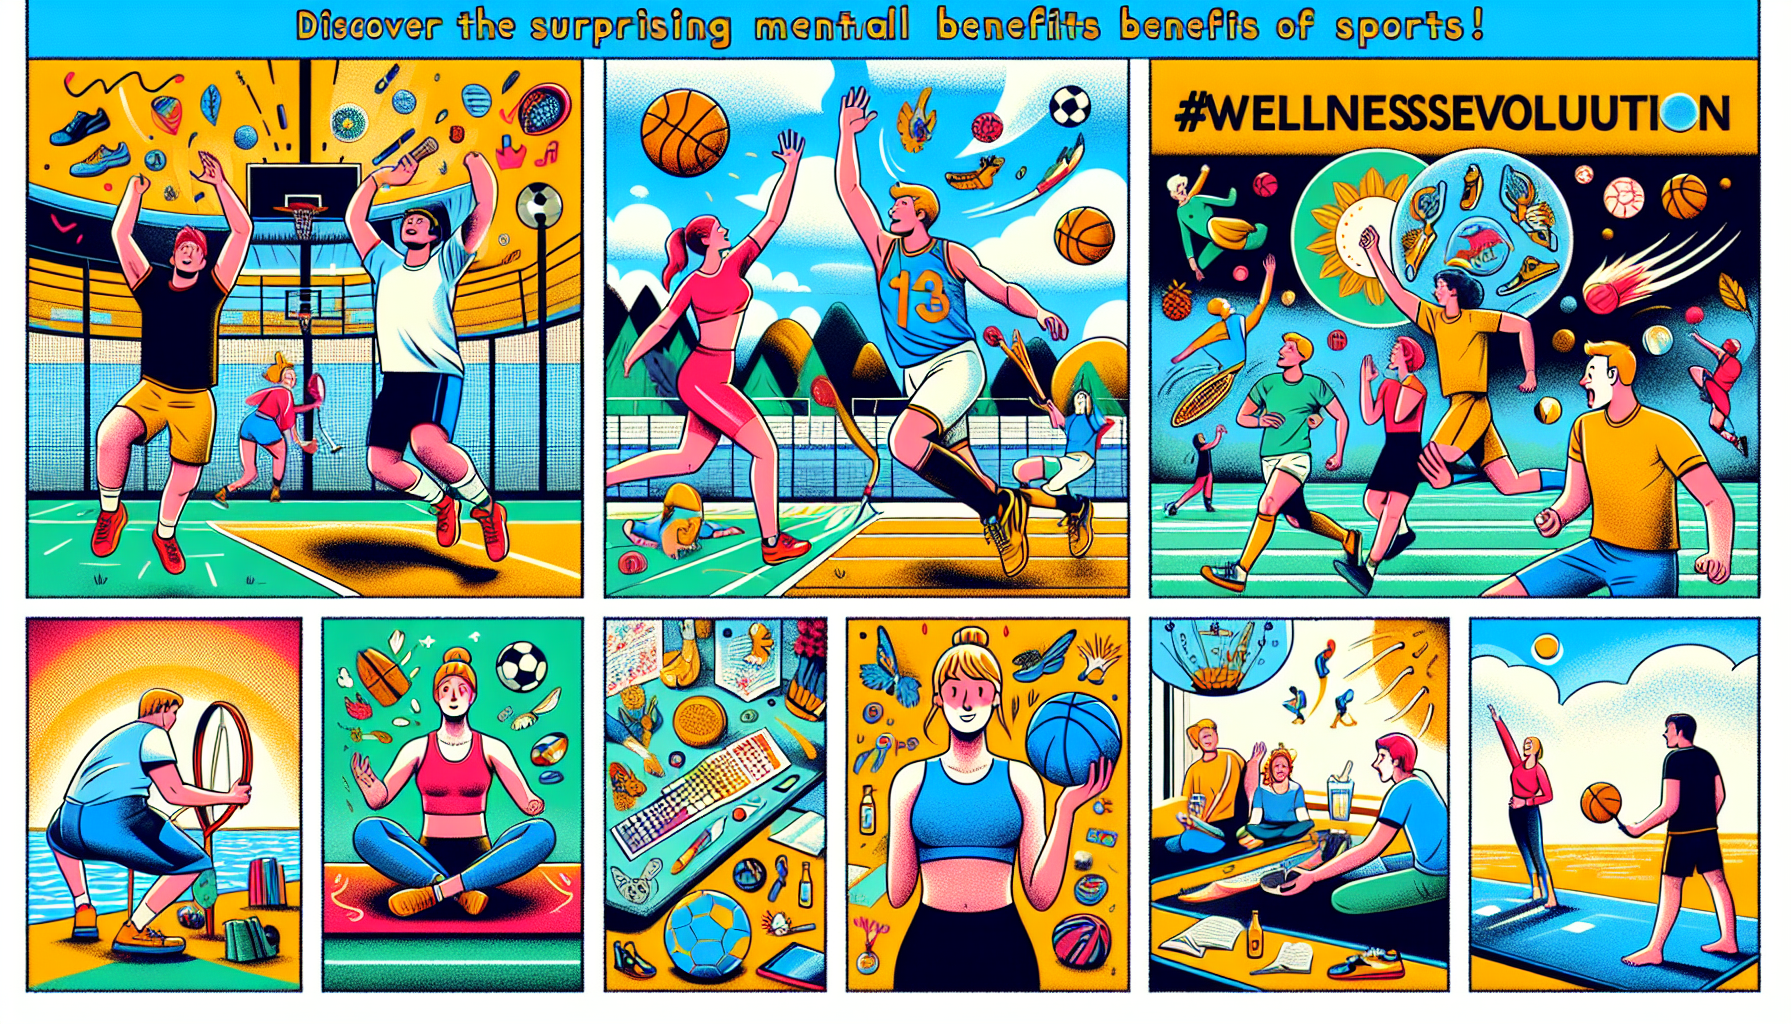 découvrez comment la pratique sportive peut aider à améliorer la santé mentale et le bien-être dans cet article sur le lien entre le sport et la santé mentale.